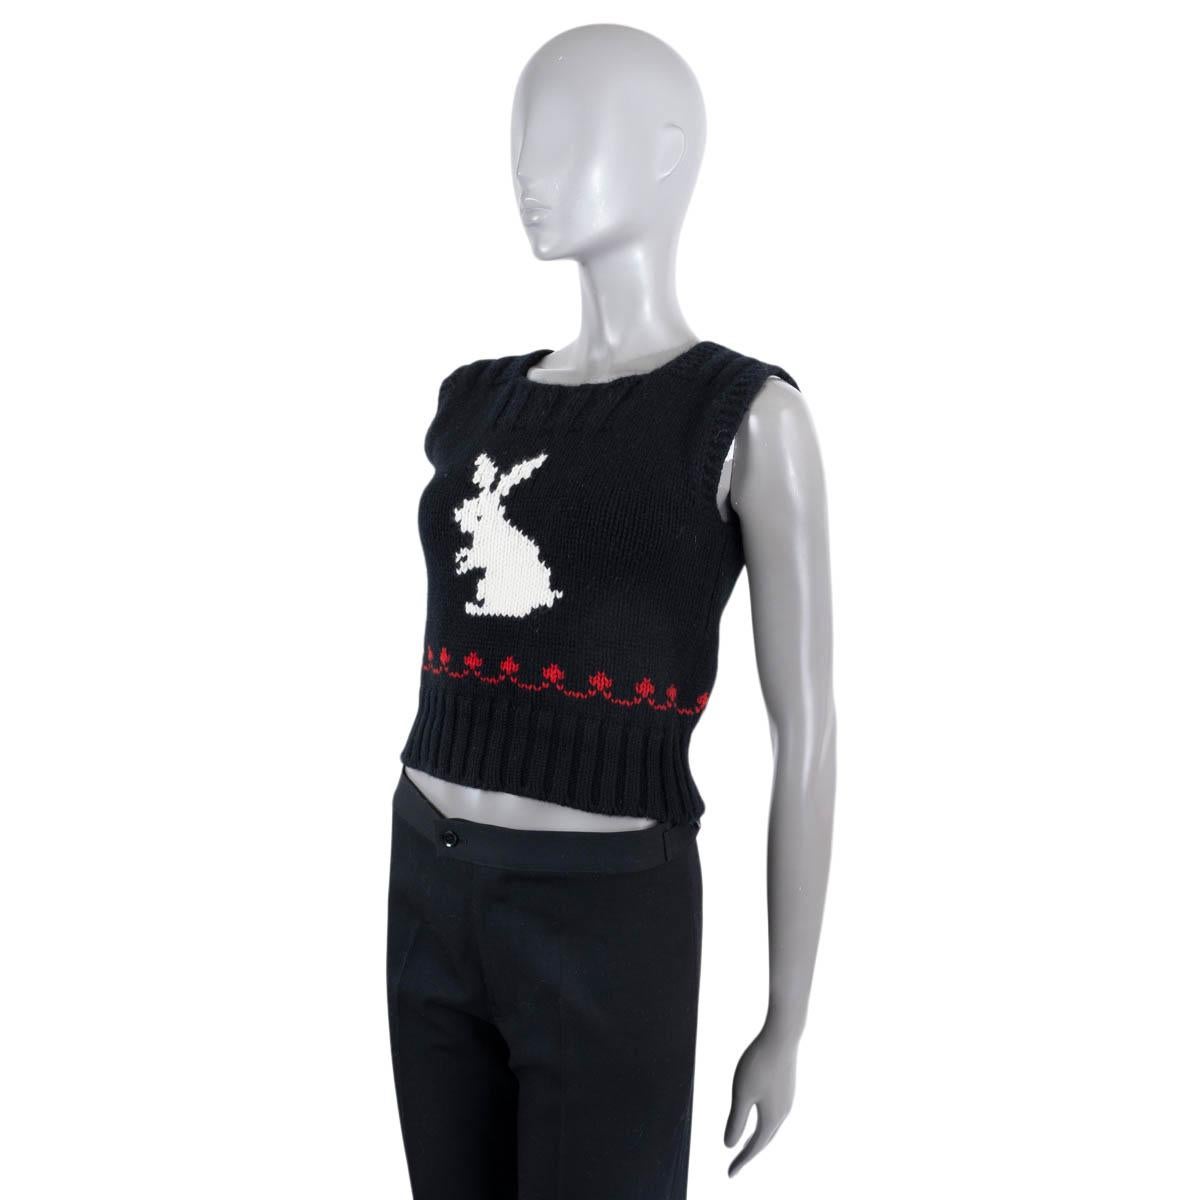 Gilet Christian Dior en laine noire (70%) et cachemire (30%). Whiting présente une silhouette courte, une maille épaisse avec un ourlet et un col en tricot côtelé, un lapin en intarsia en blanc et des détails en rouge. A été porté et est en